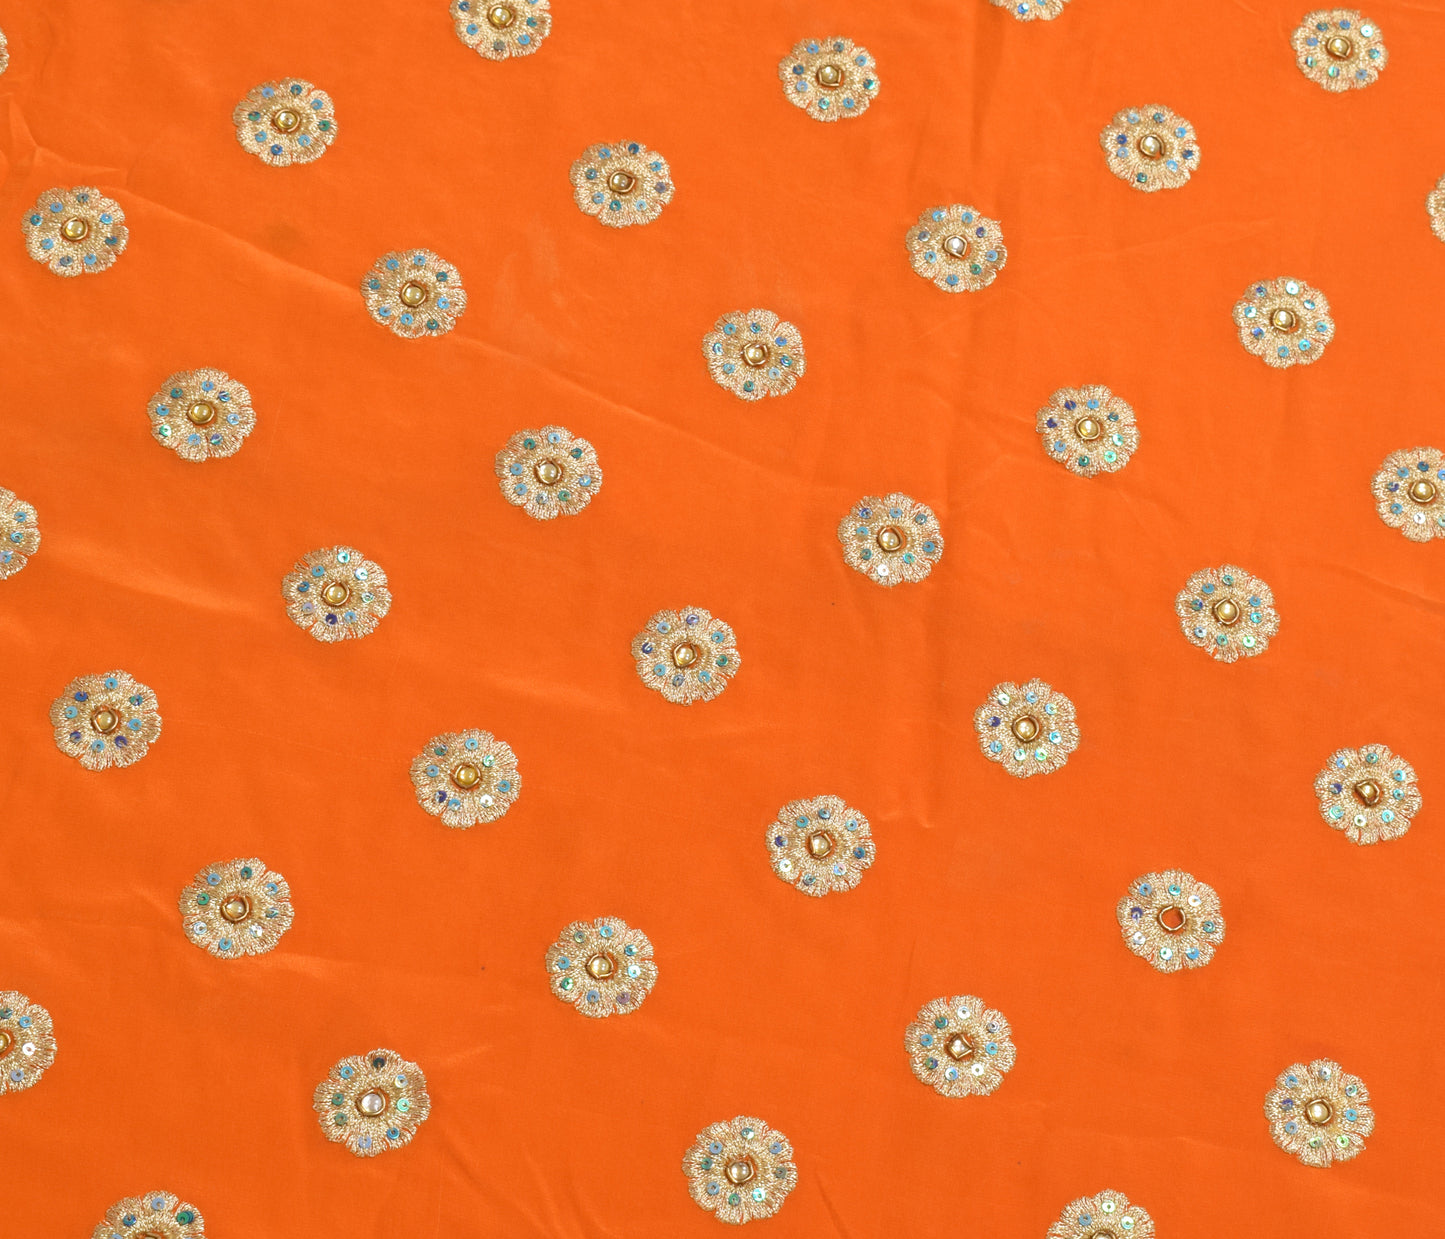 Sushila Vintage Orange Sari Remnant Scrap Crepe Silk Hand Beaded Craft Fabric